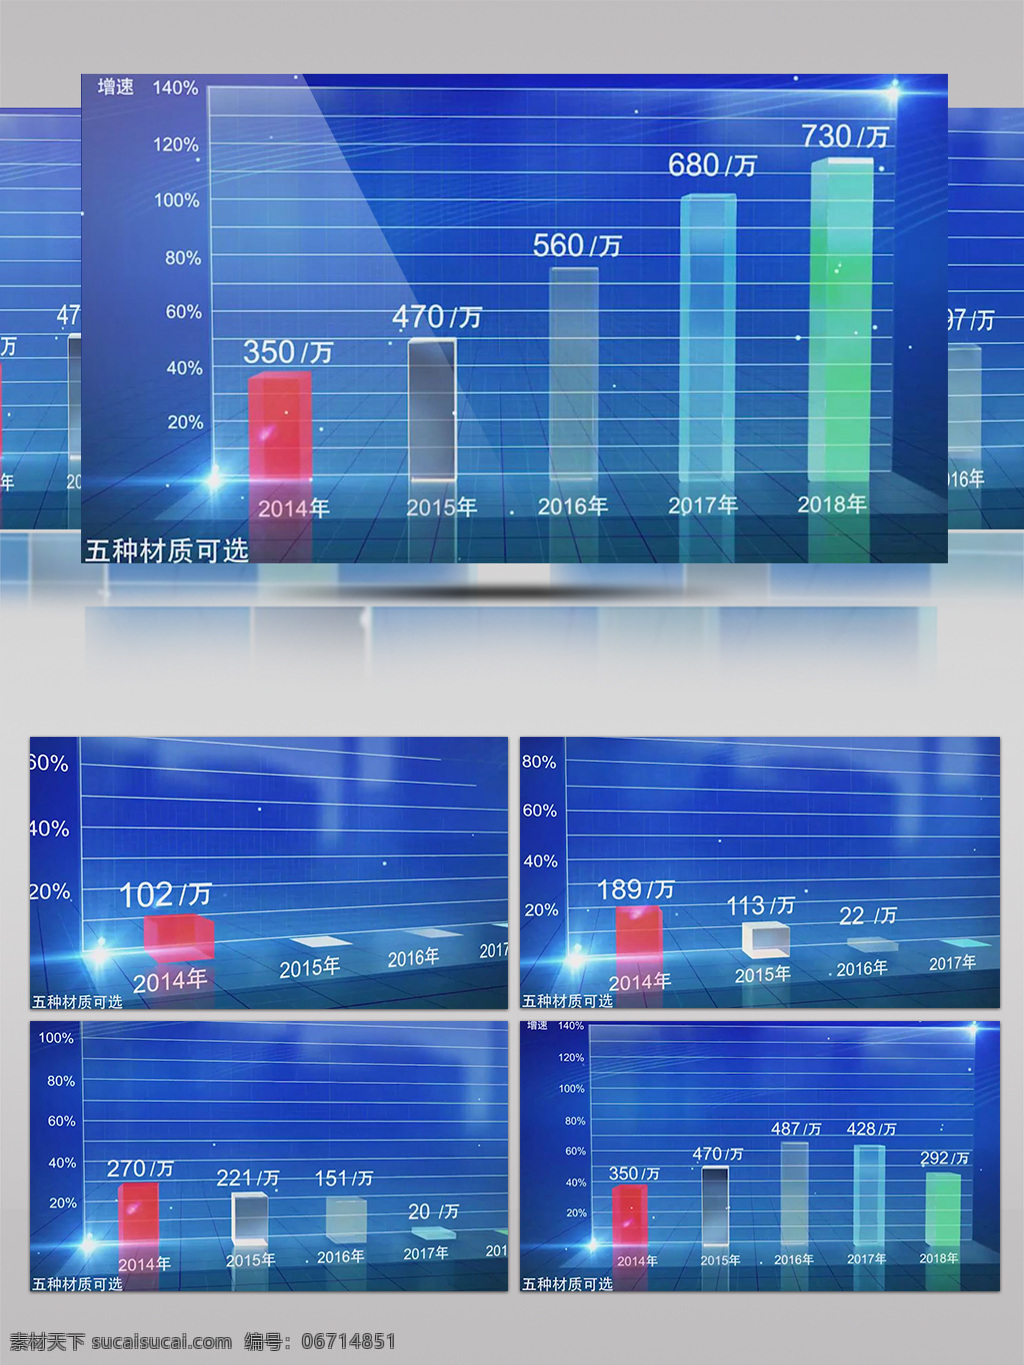 e3d 蓝色 科技 数据 图表 效果 ae 模板 ae模板 企业宣传 企业展示 数据图表 ae模板下载 图文展示 数据宣传 公司 发展 时间 线 宣传展示 公司数据展示